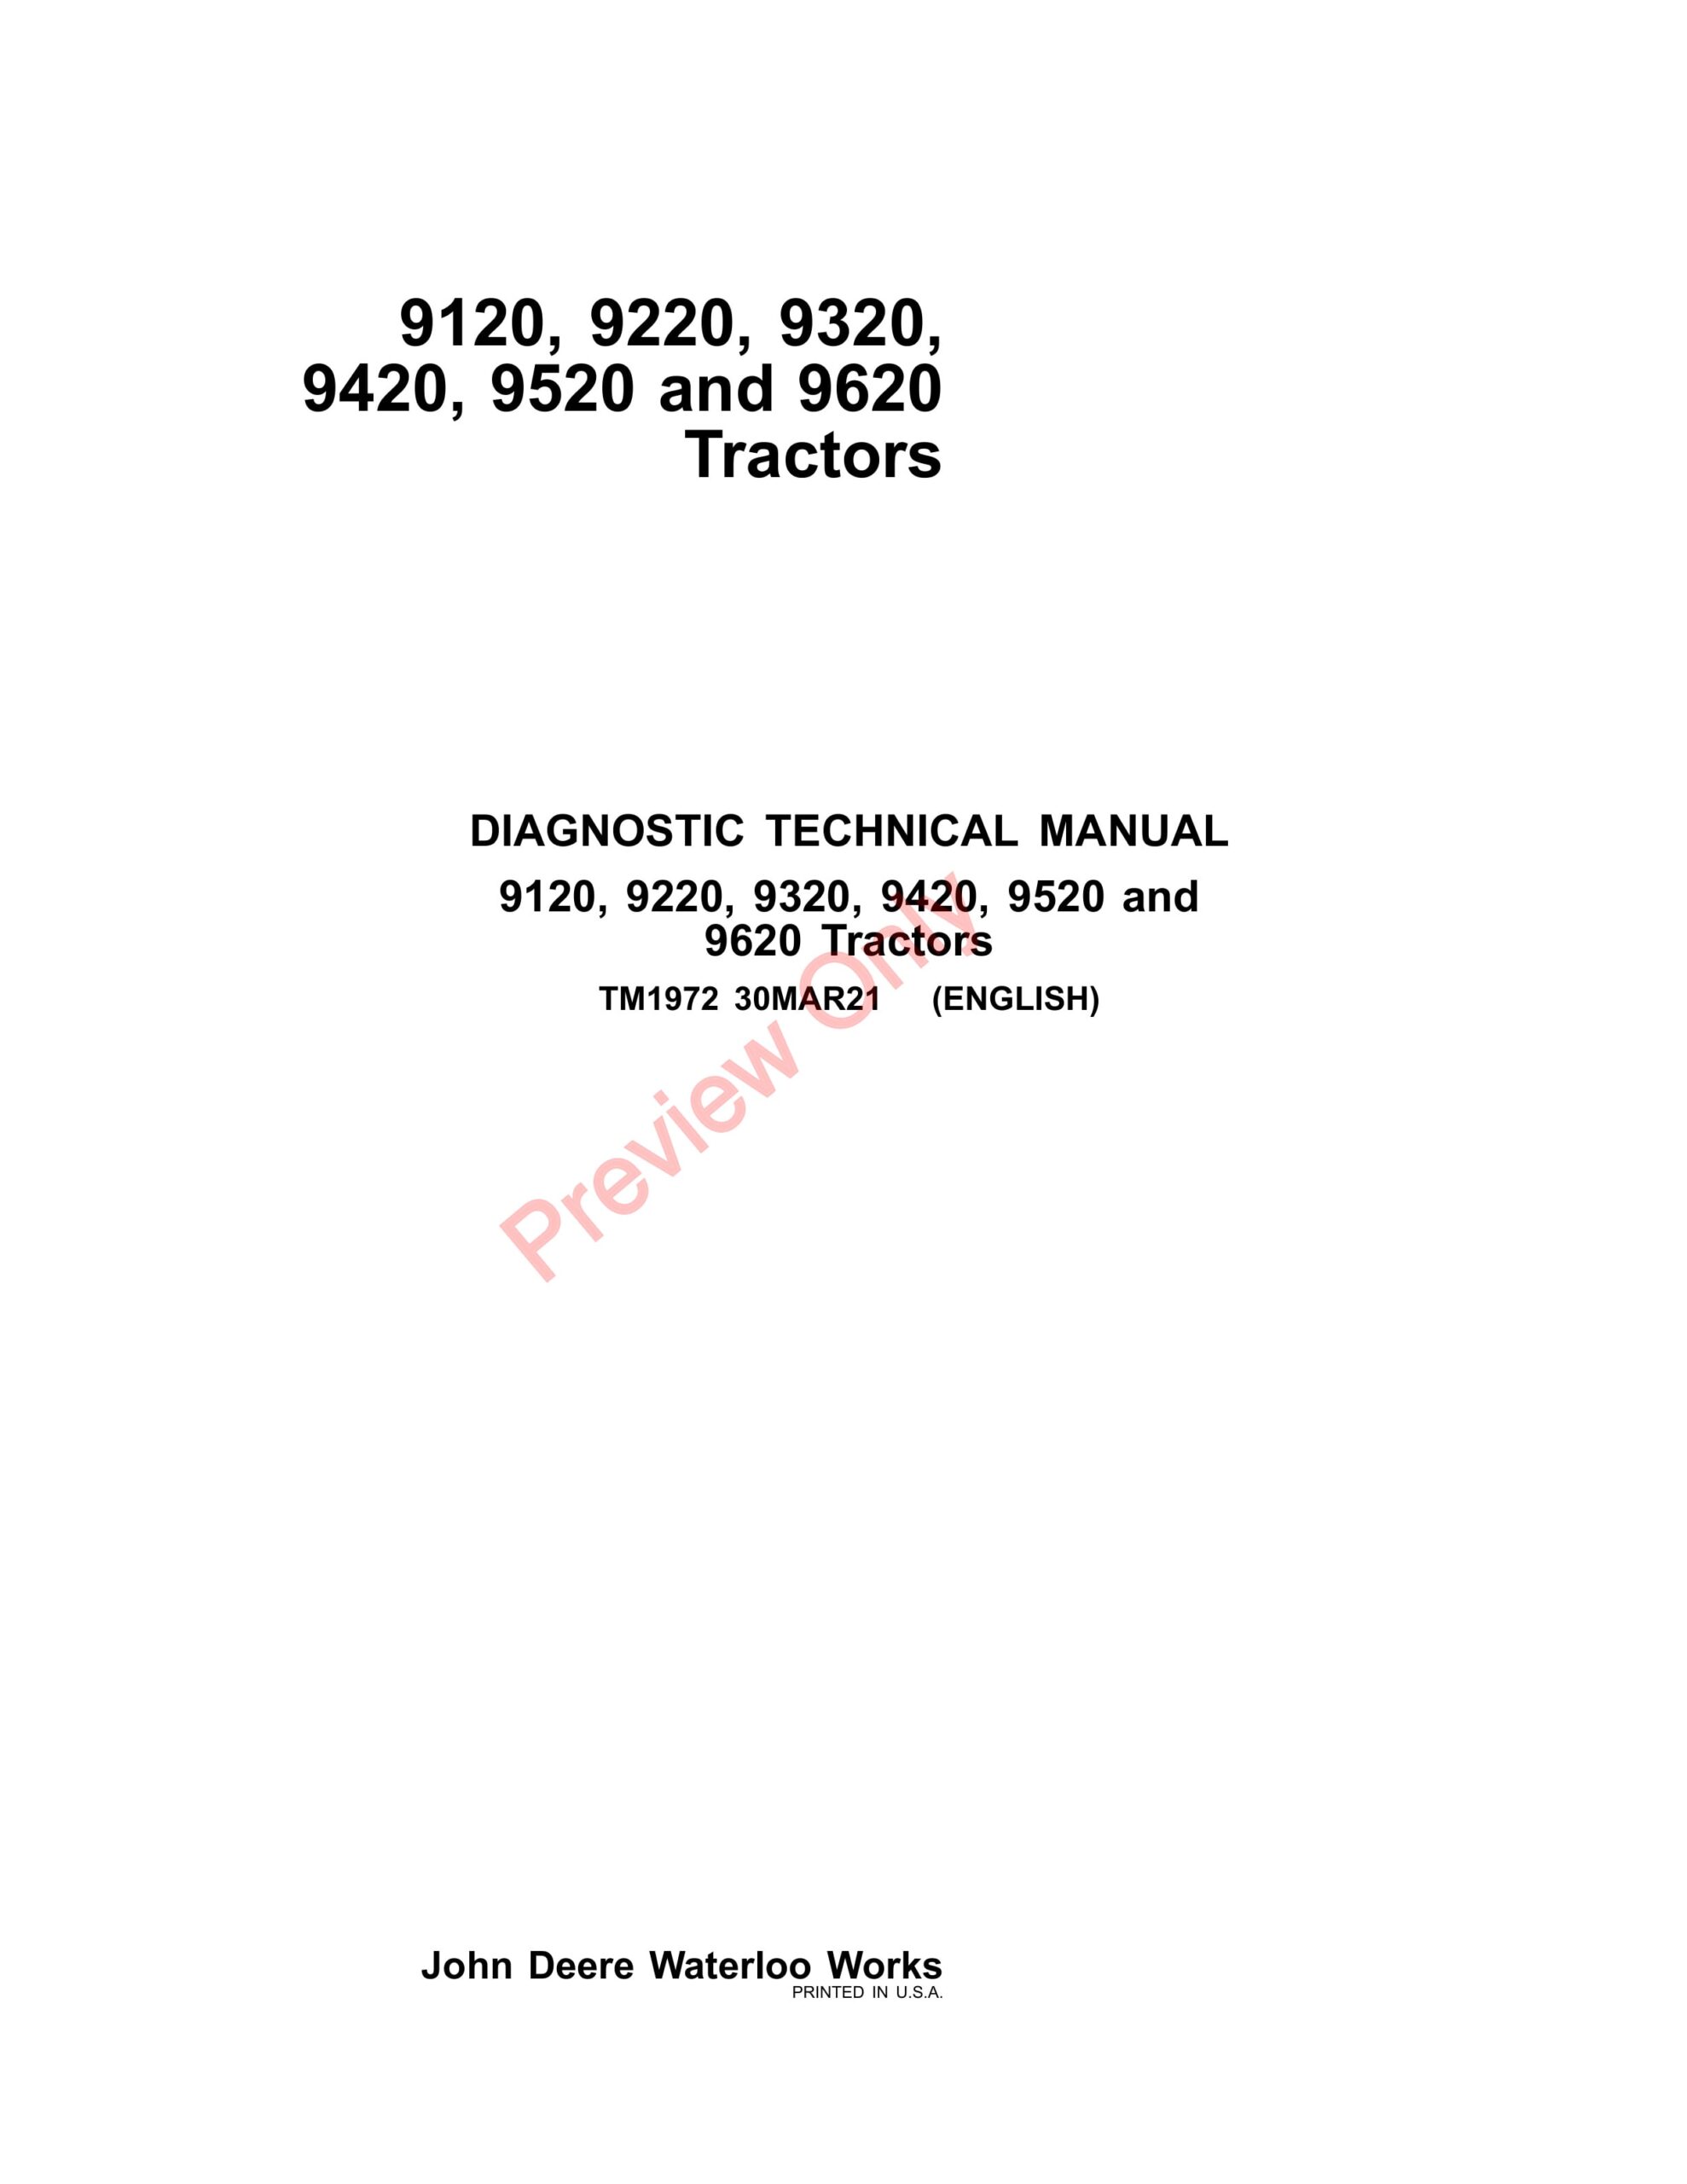 John Deere 9120, 9220, 9320, 9420, 9520, 9620 Tractors Diagnostic Technical Manual TM1972 30MAR21-1